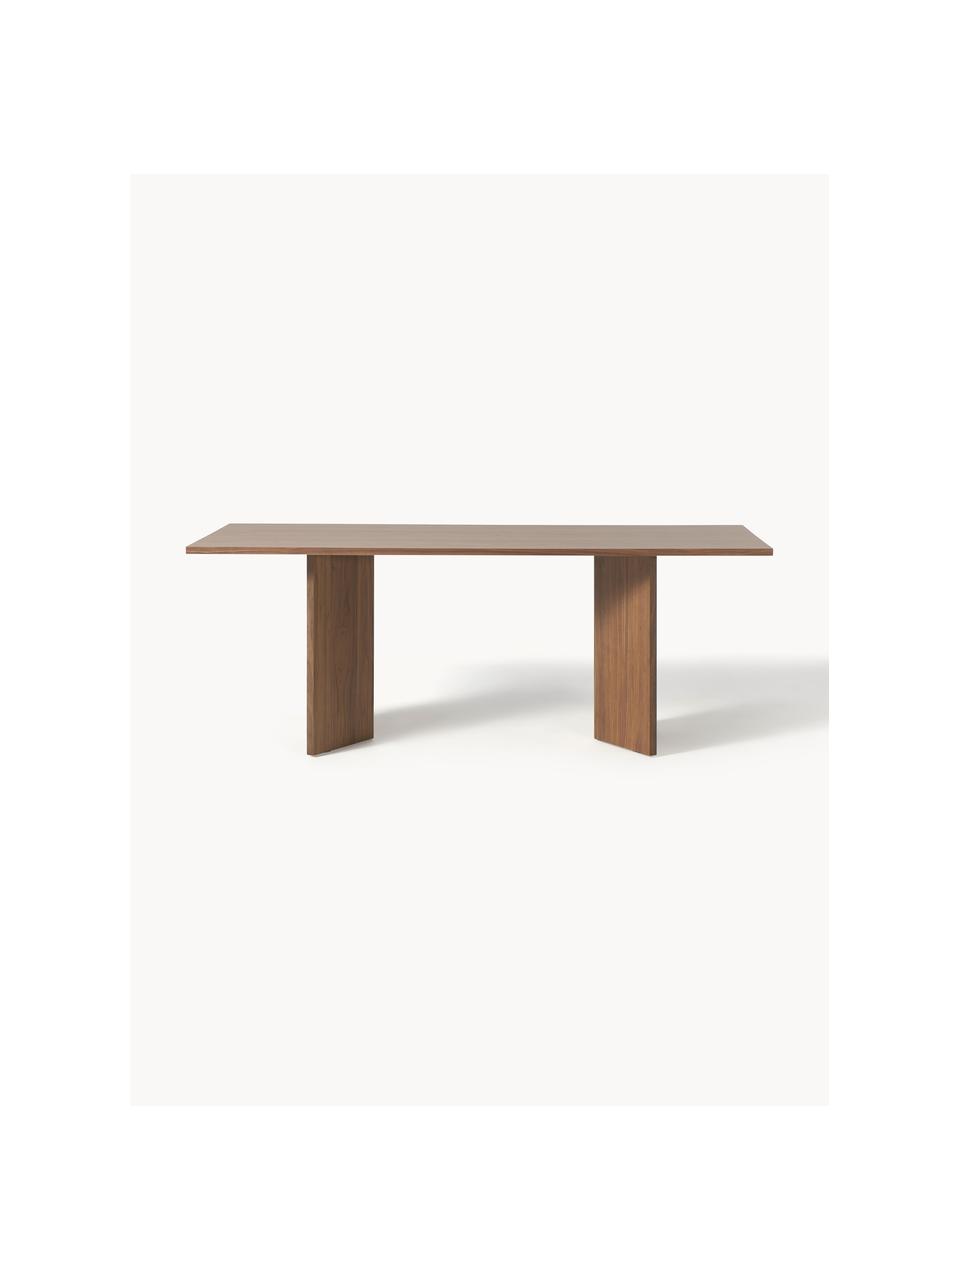 Tavolo in legno Toni, 200 x 90 cm, Pannello MDF (fibra a media densità), impiallacciato in noce, certificato FSC (Forest Stewardship Council), Legno di noce, Larg. 200 x Prof. 90 cm